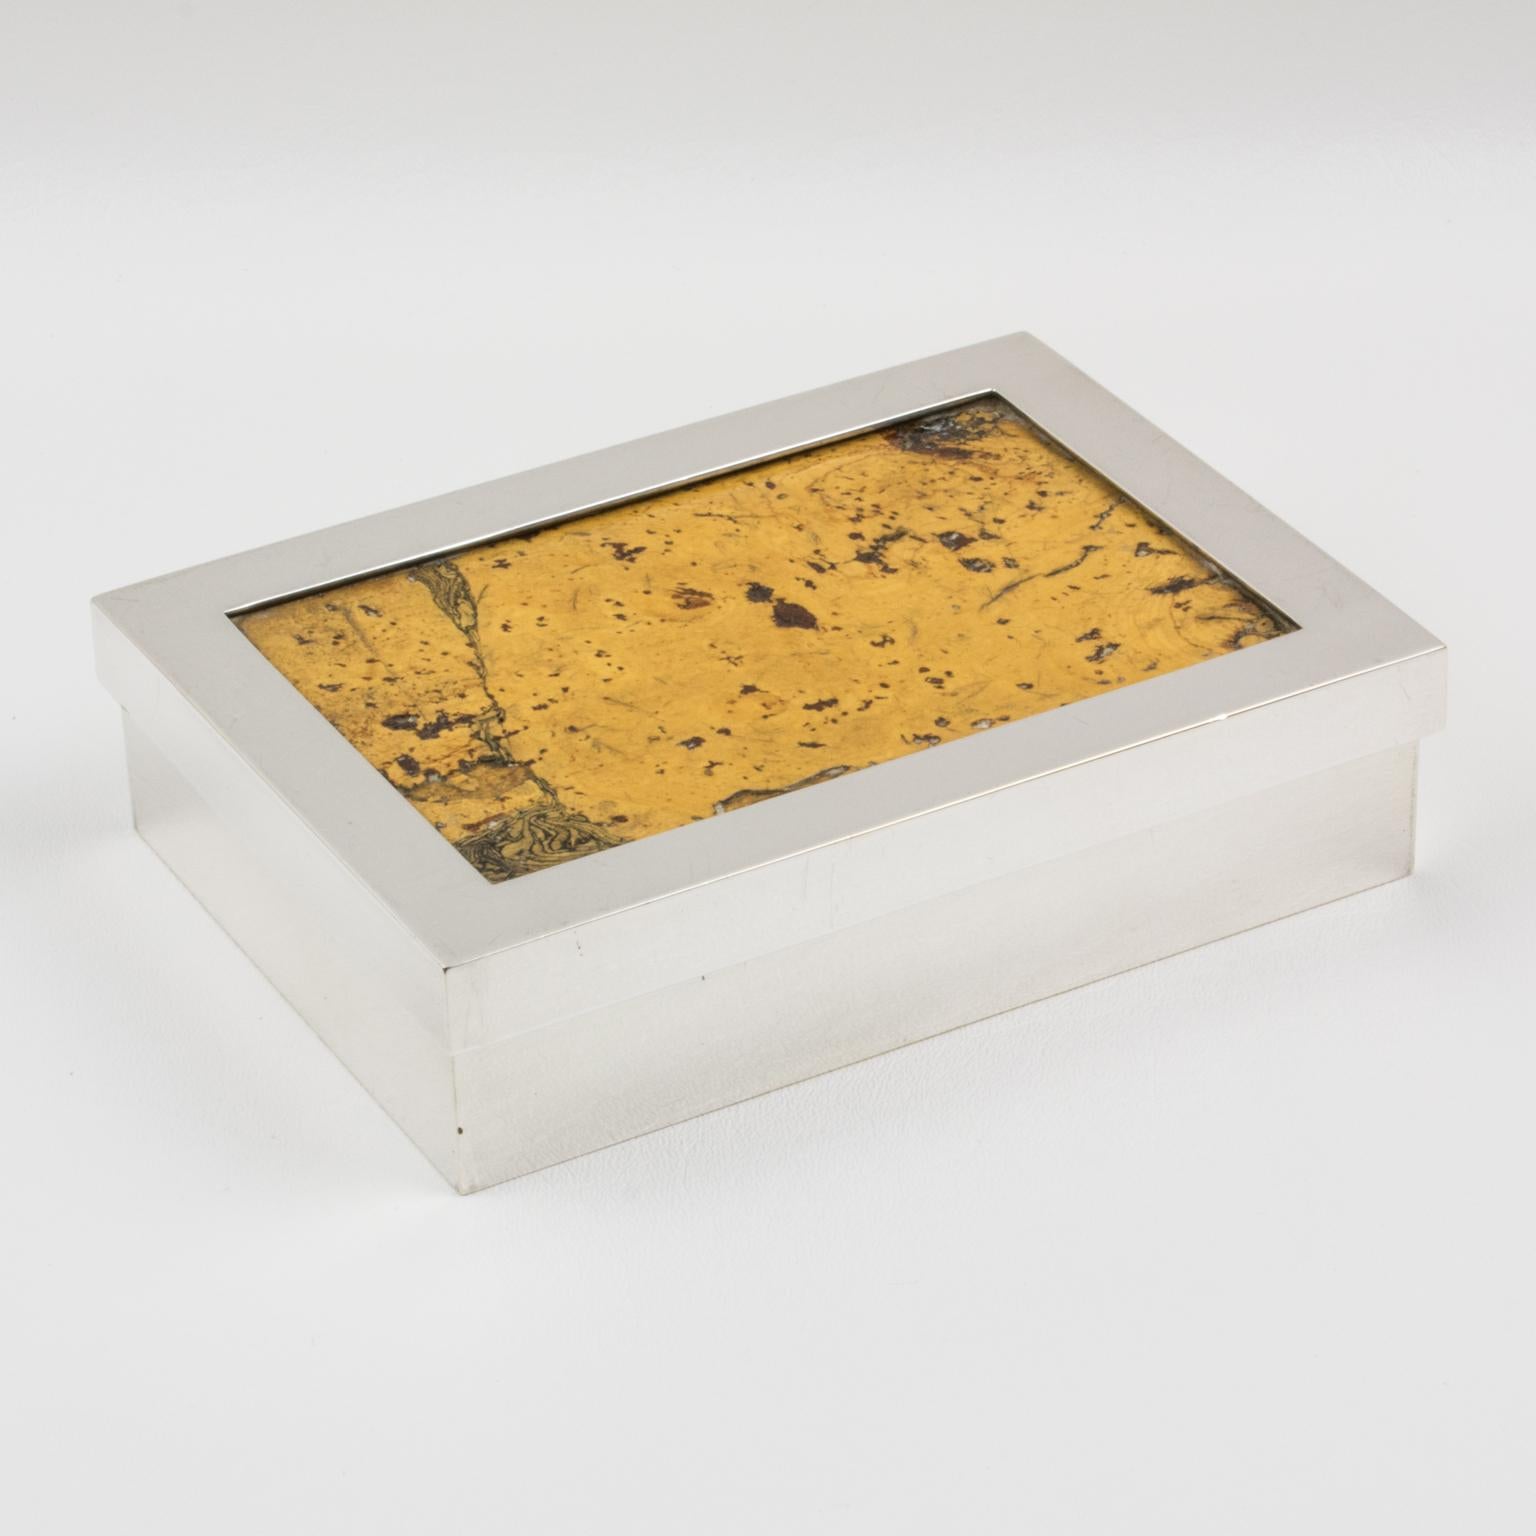 French Debladis Paris Art Deco Silver Plate and Cork Decorative Box, 1940s For Sale